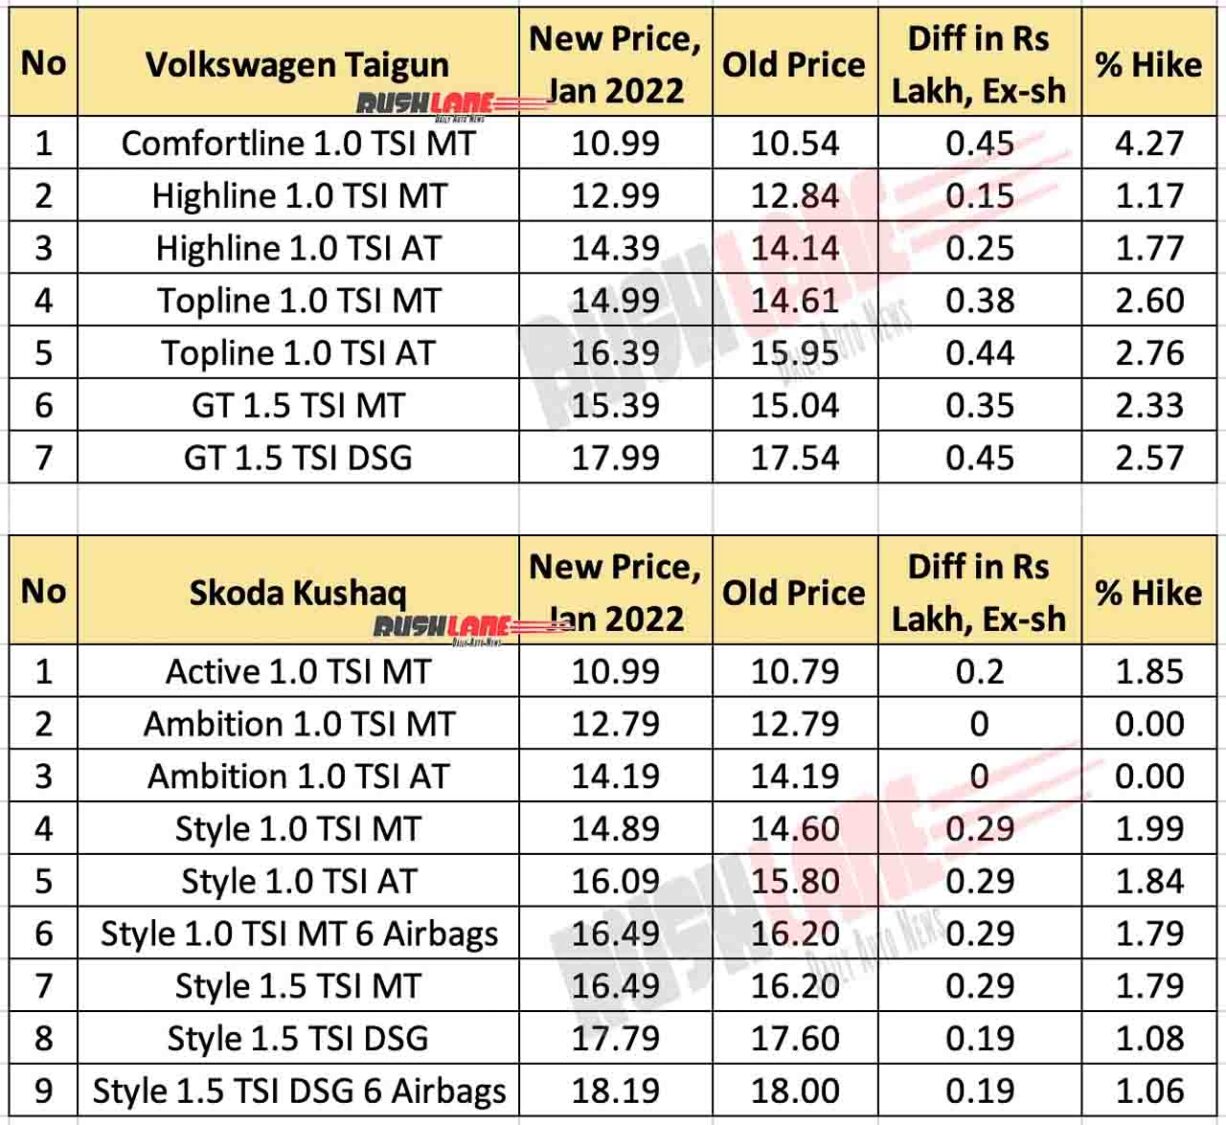 Volkswagen Taigun and Skoda Kushaq Price Hike Jan 2022